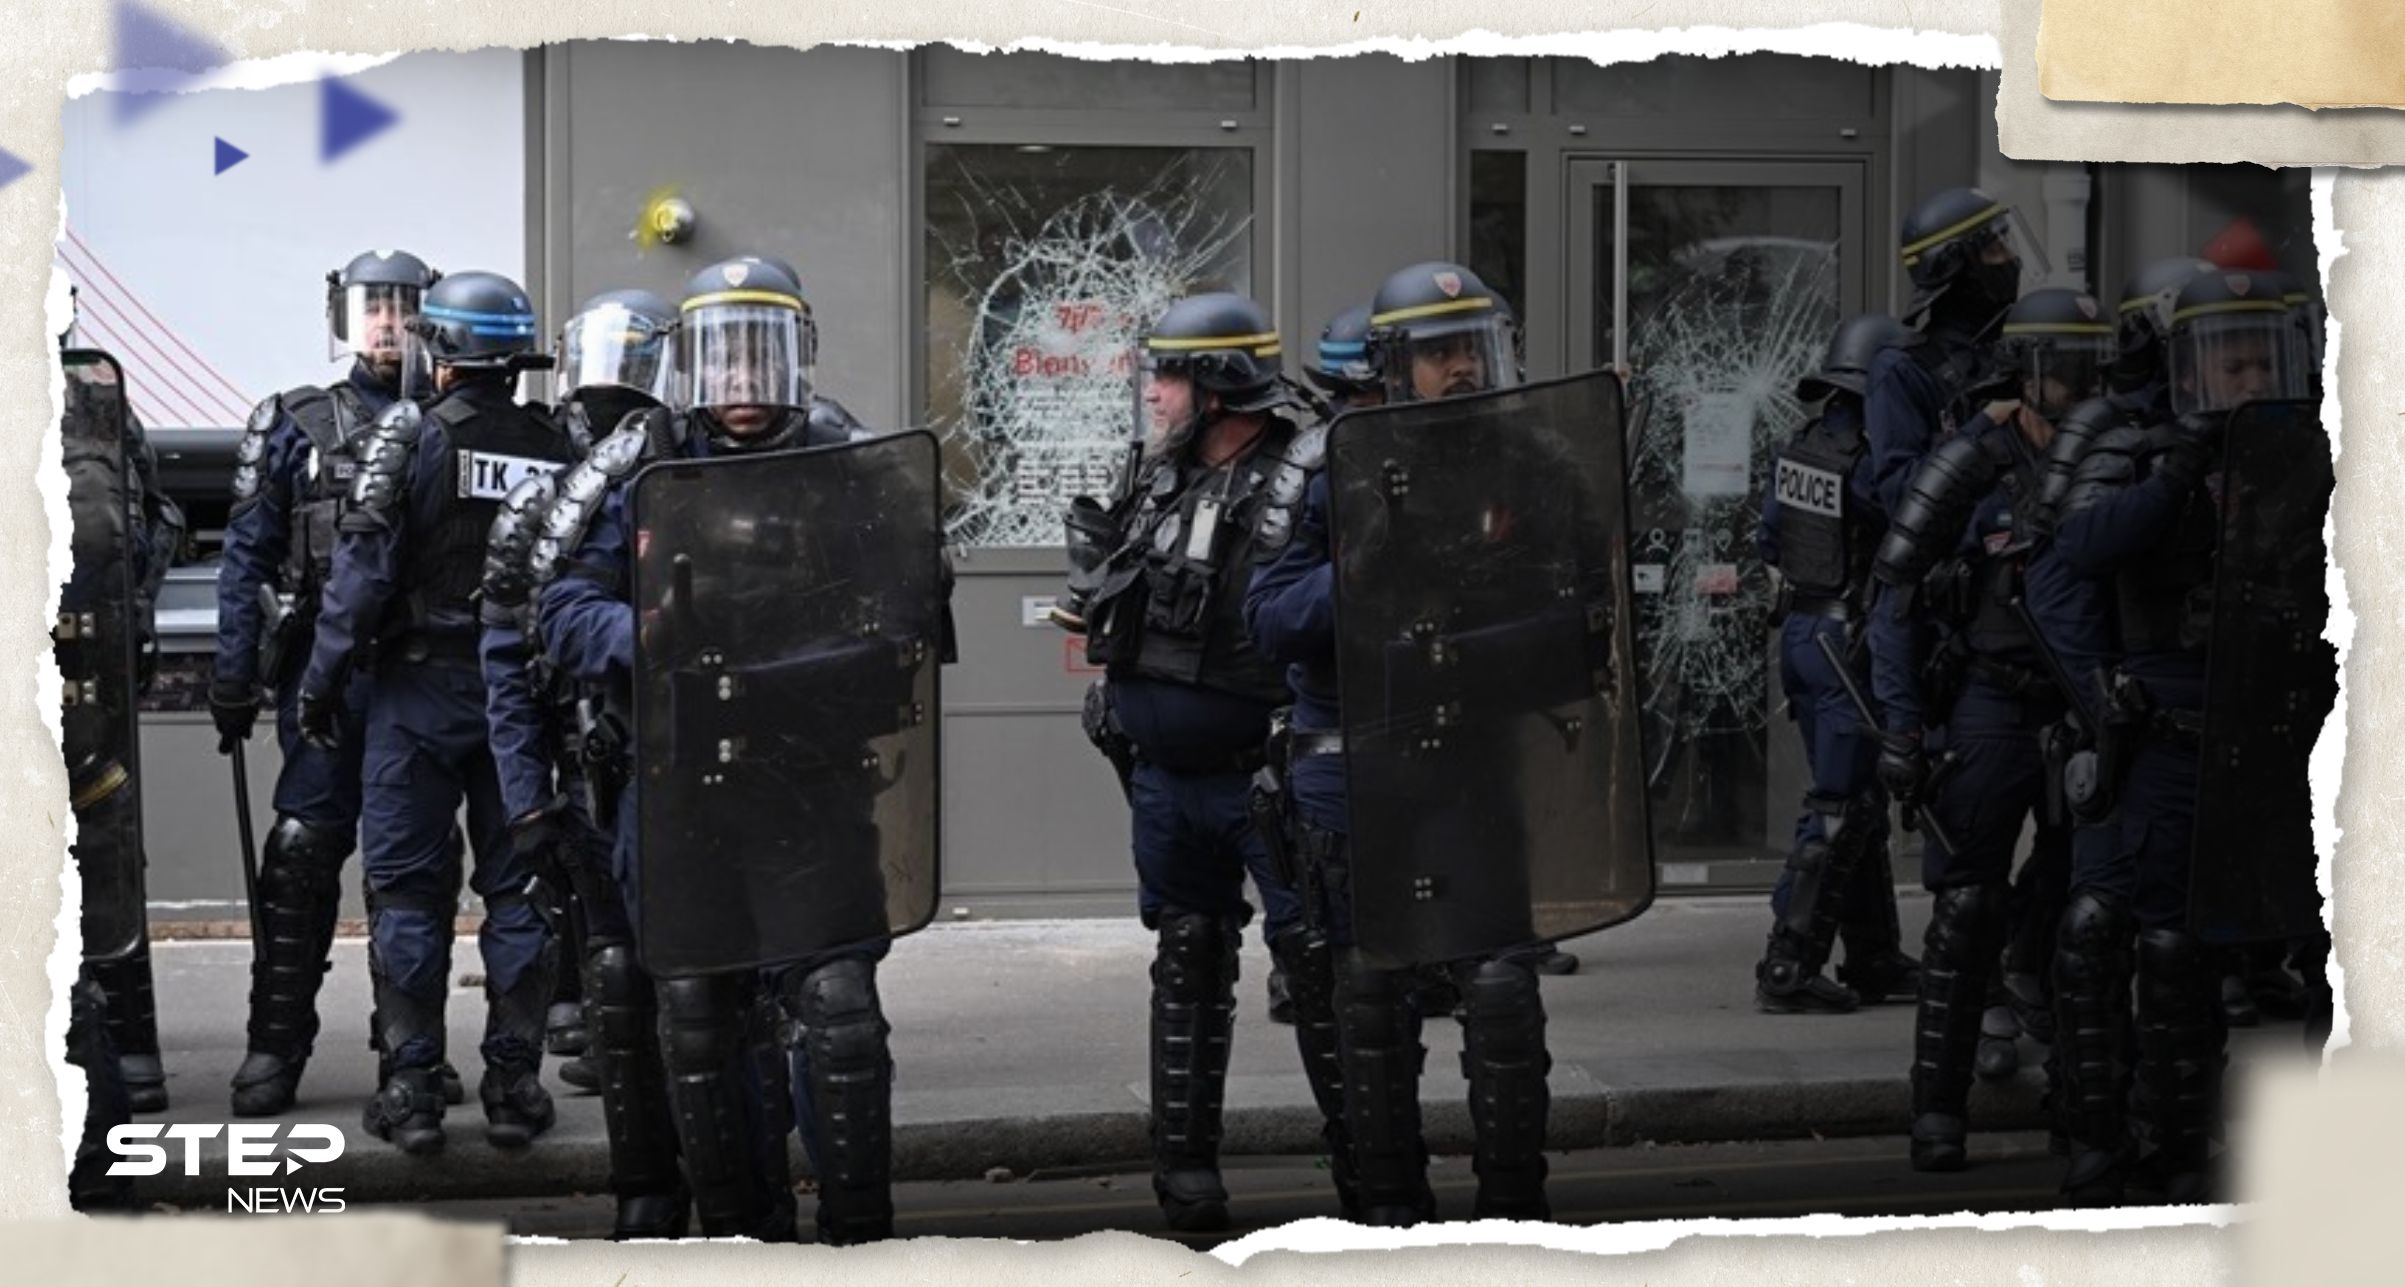 بالفيديو محتجون يهاجمون سيارة للشرطة وبنكاً خلال مظاهرة في باريس